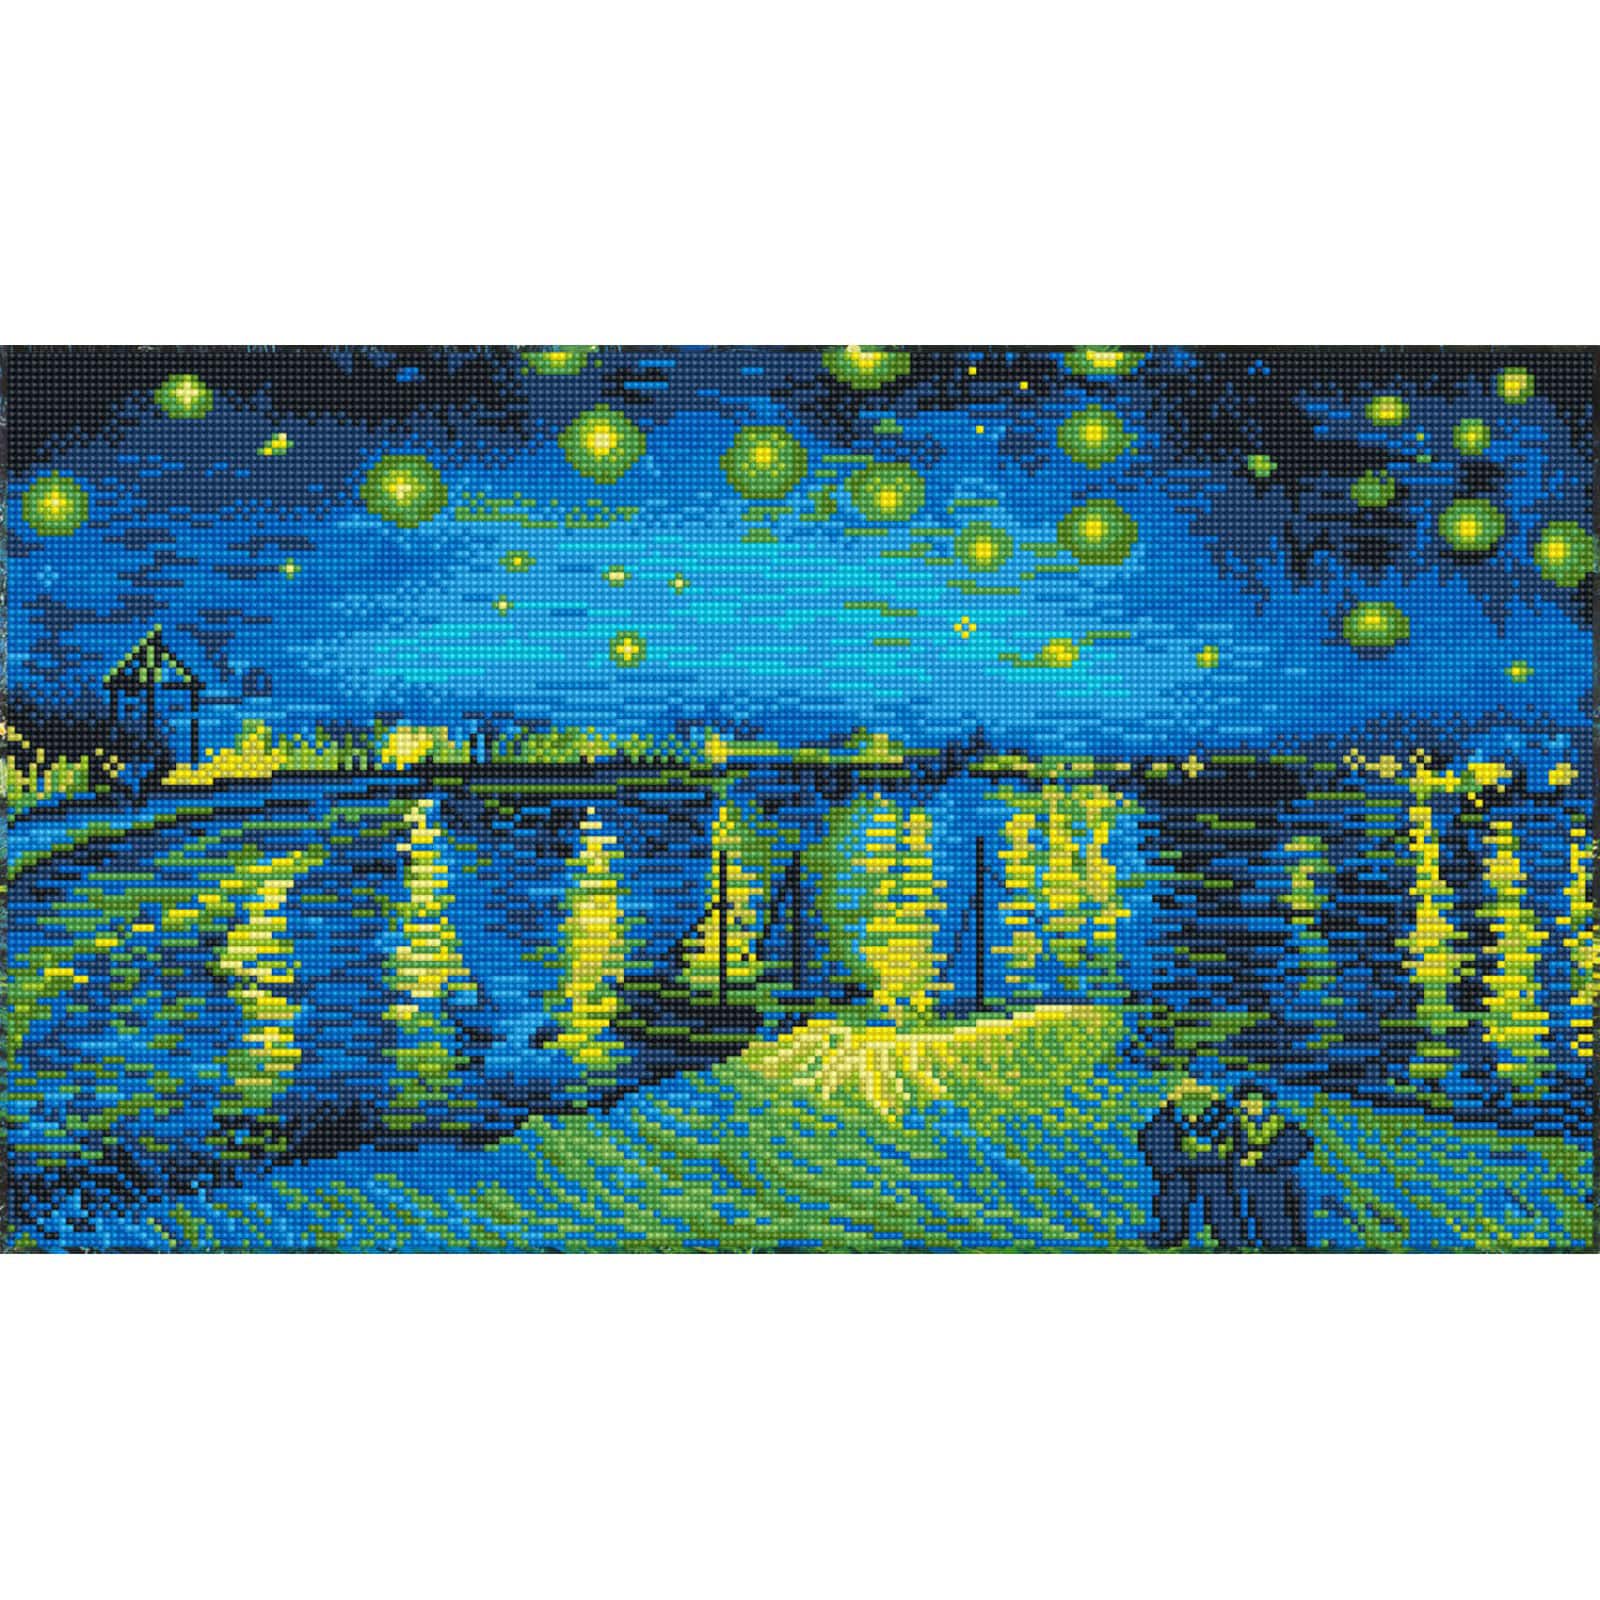 The Starry Night Diamond Painting